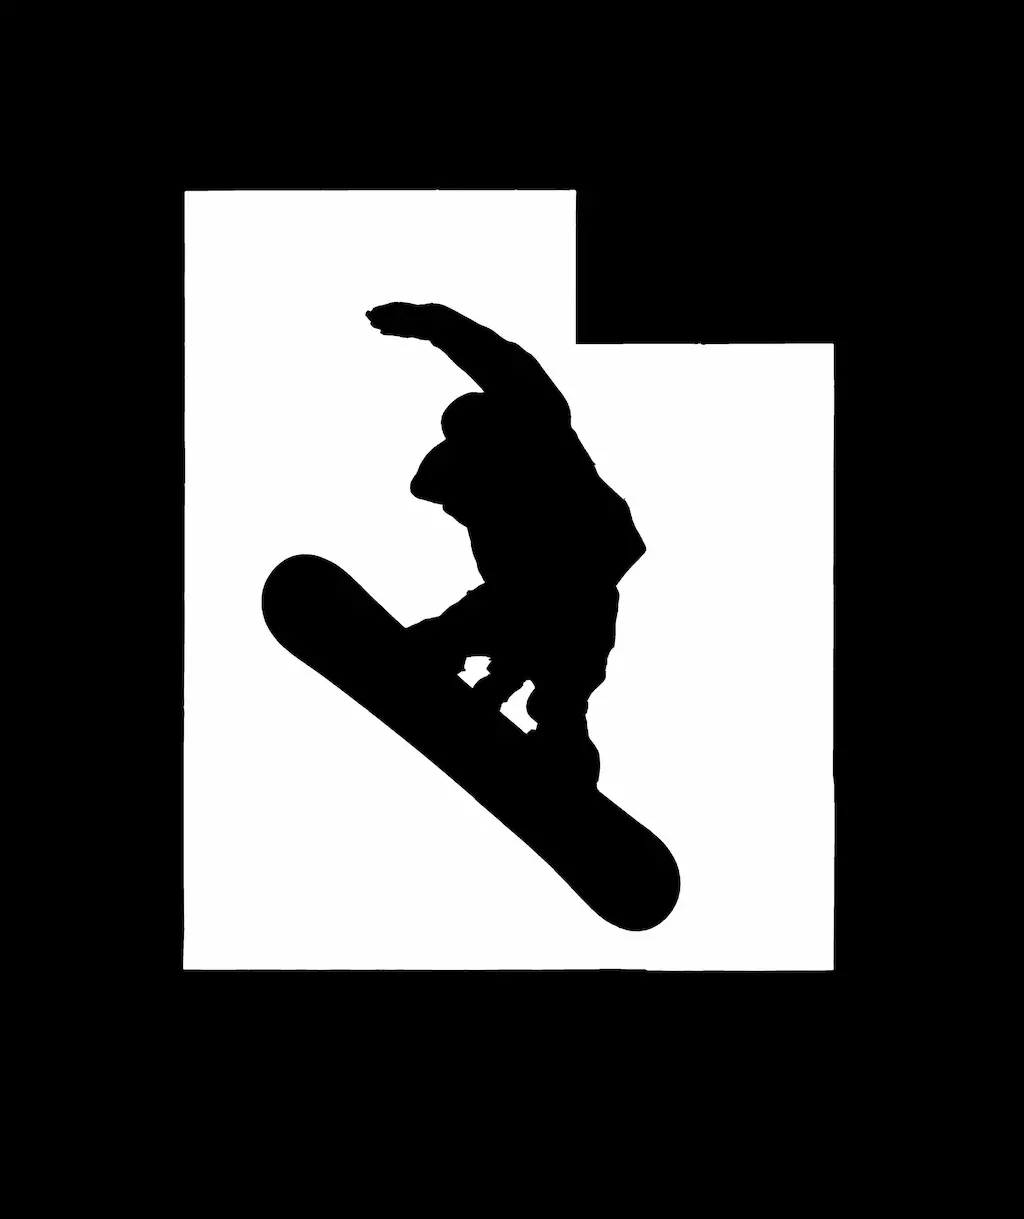 Snowboard Sticker Design